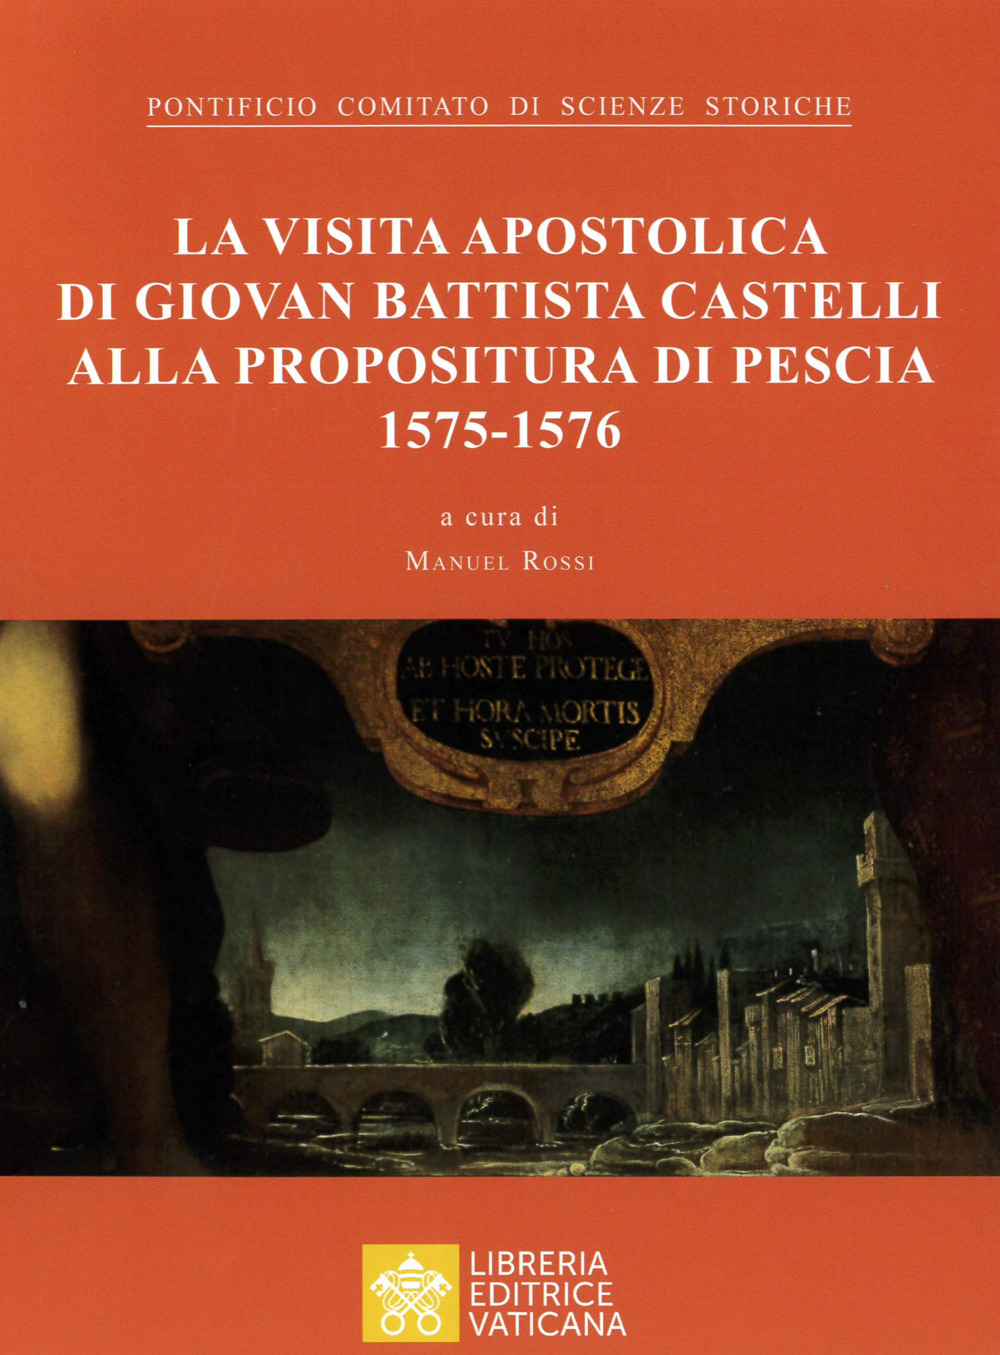 La visita apostolica di Giovanni Battista Castelli alla propositura di Pescia (1575-1576)